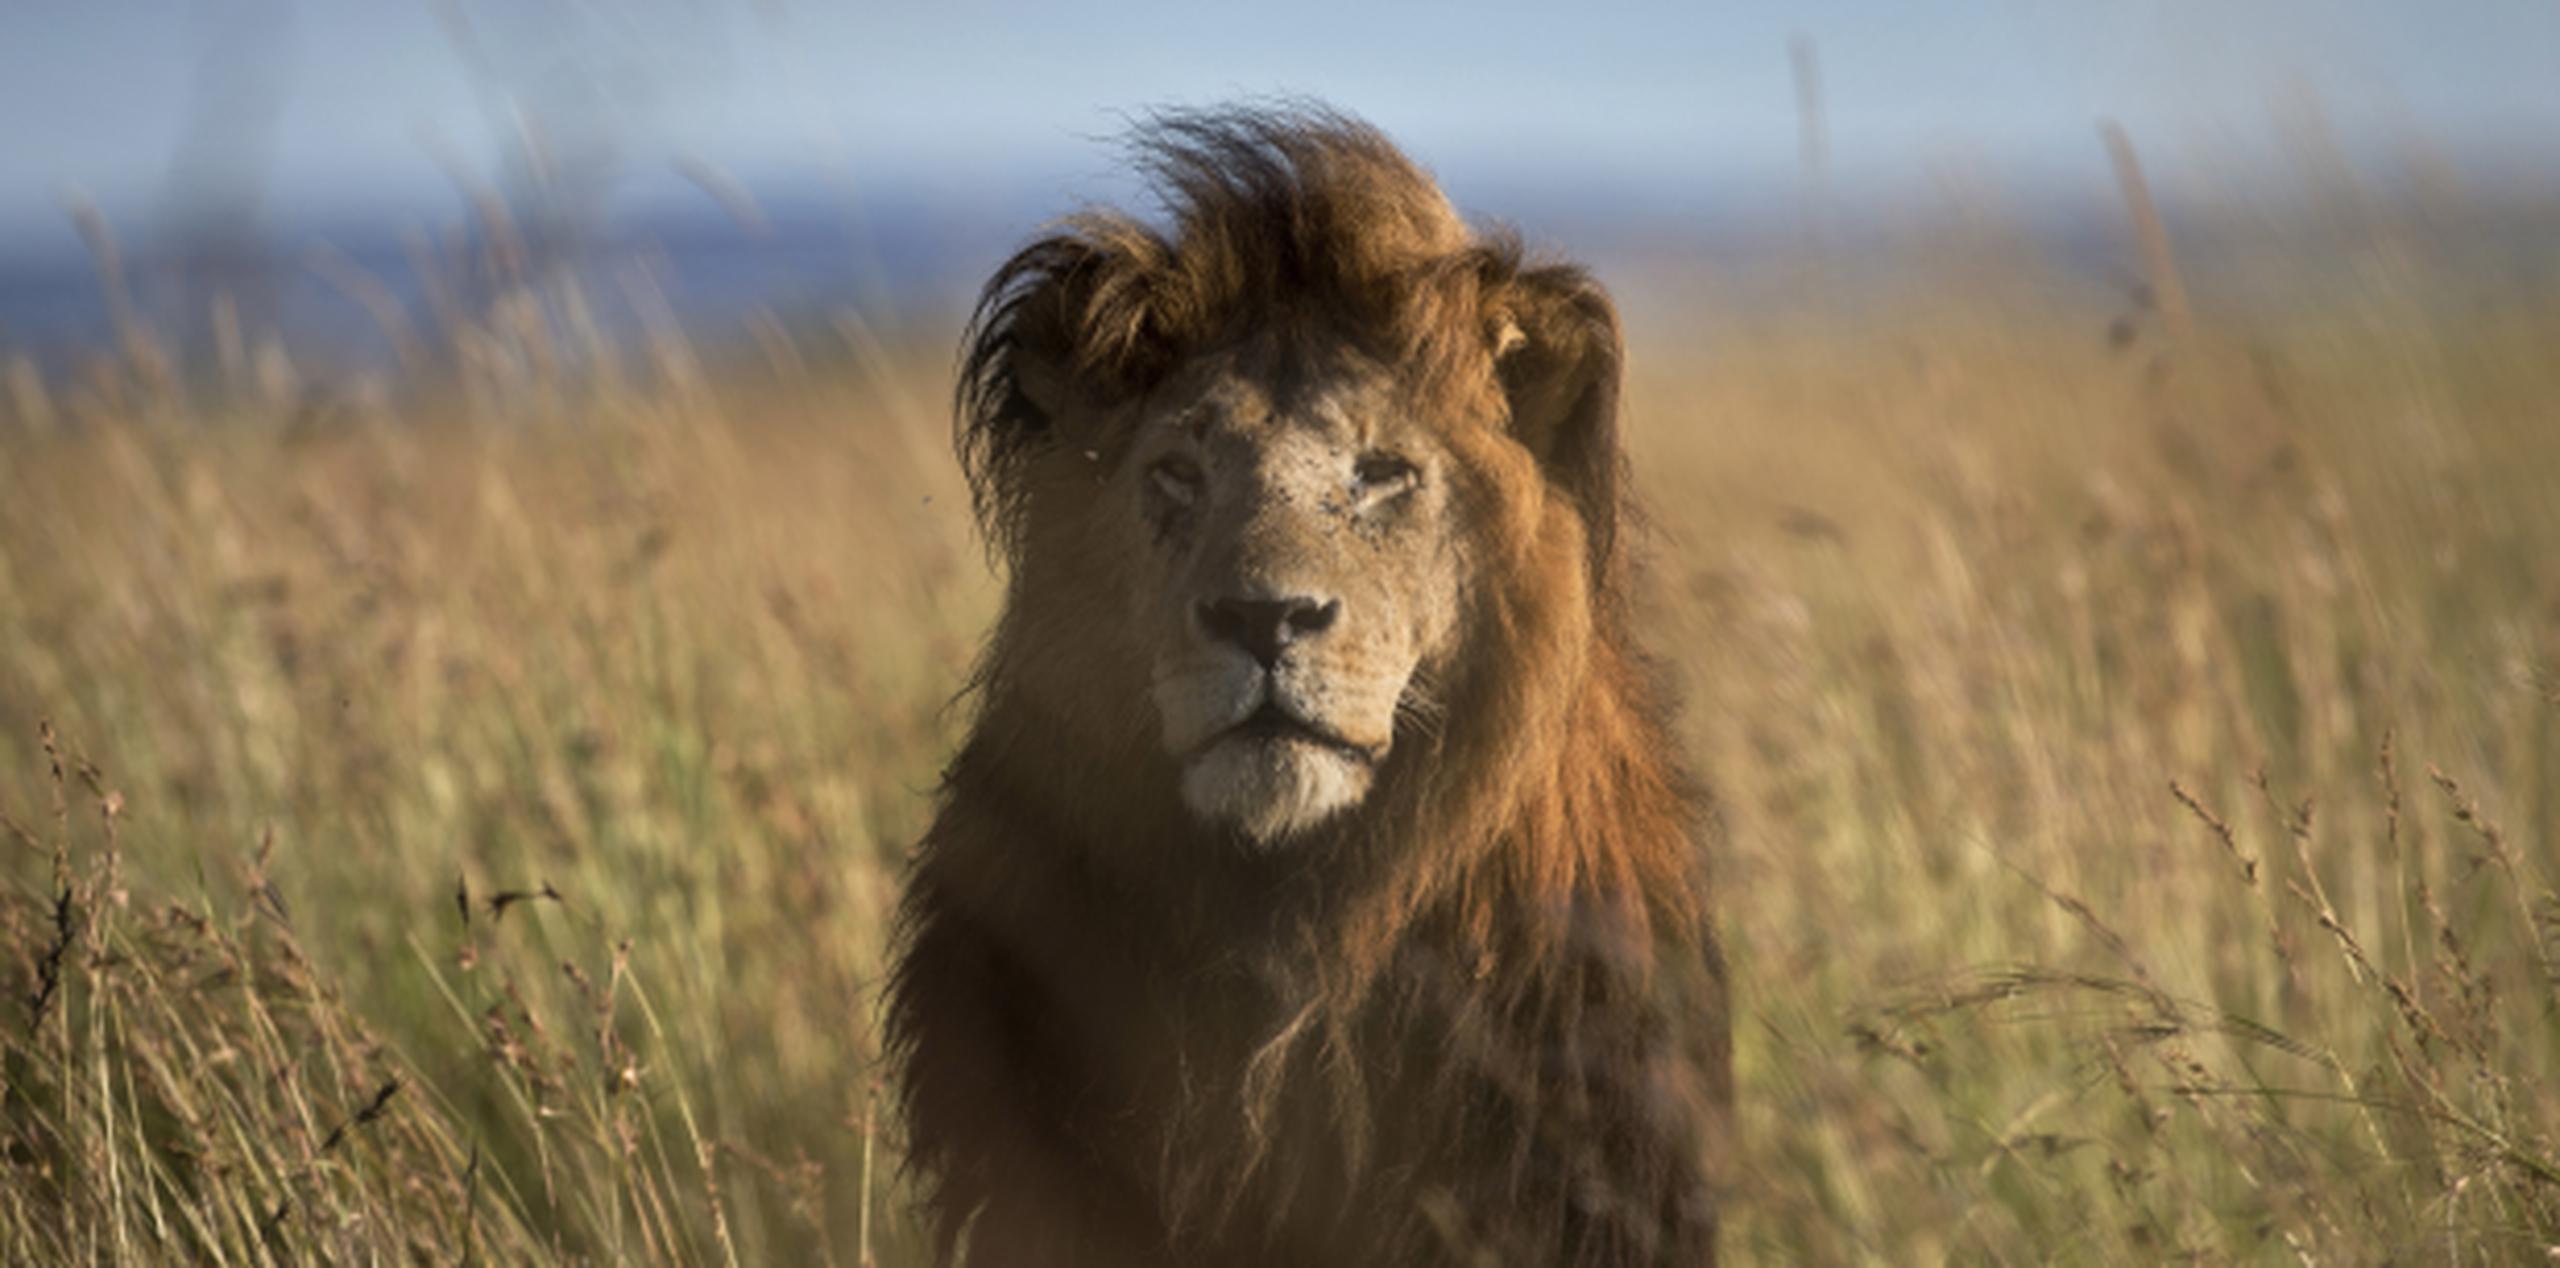 El león atacante, Nxaha, lleva un collar instalado por investigadores y posteriormente se decidirá el destino del animal. (AP)